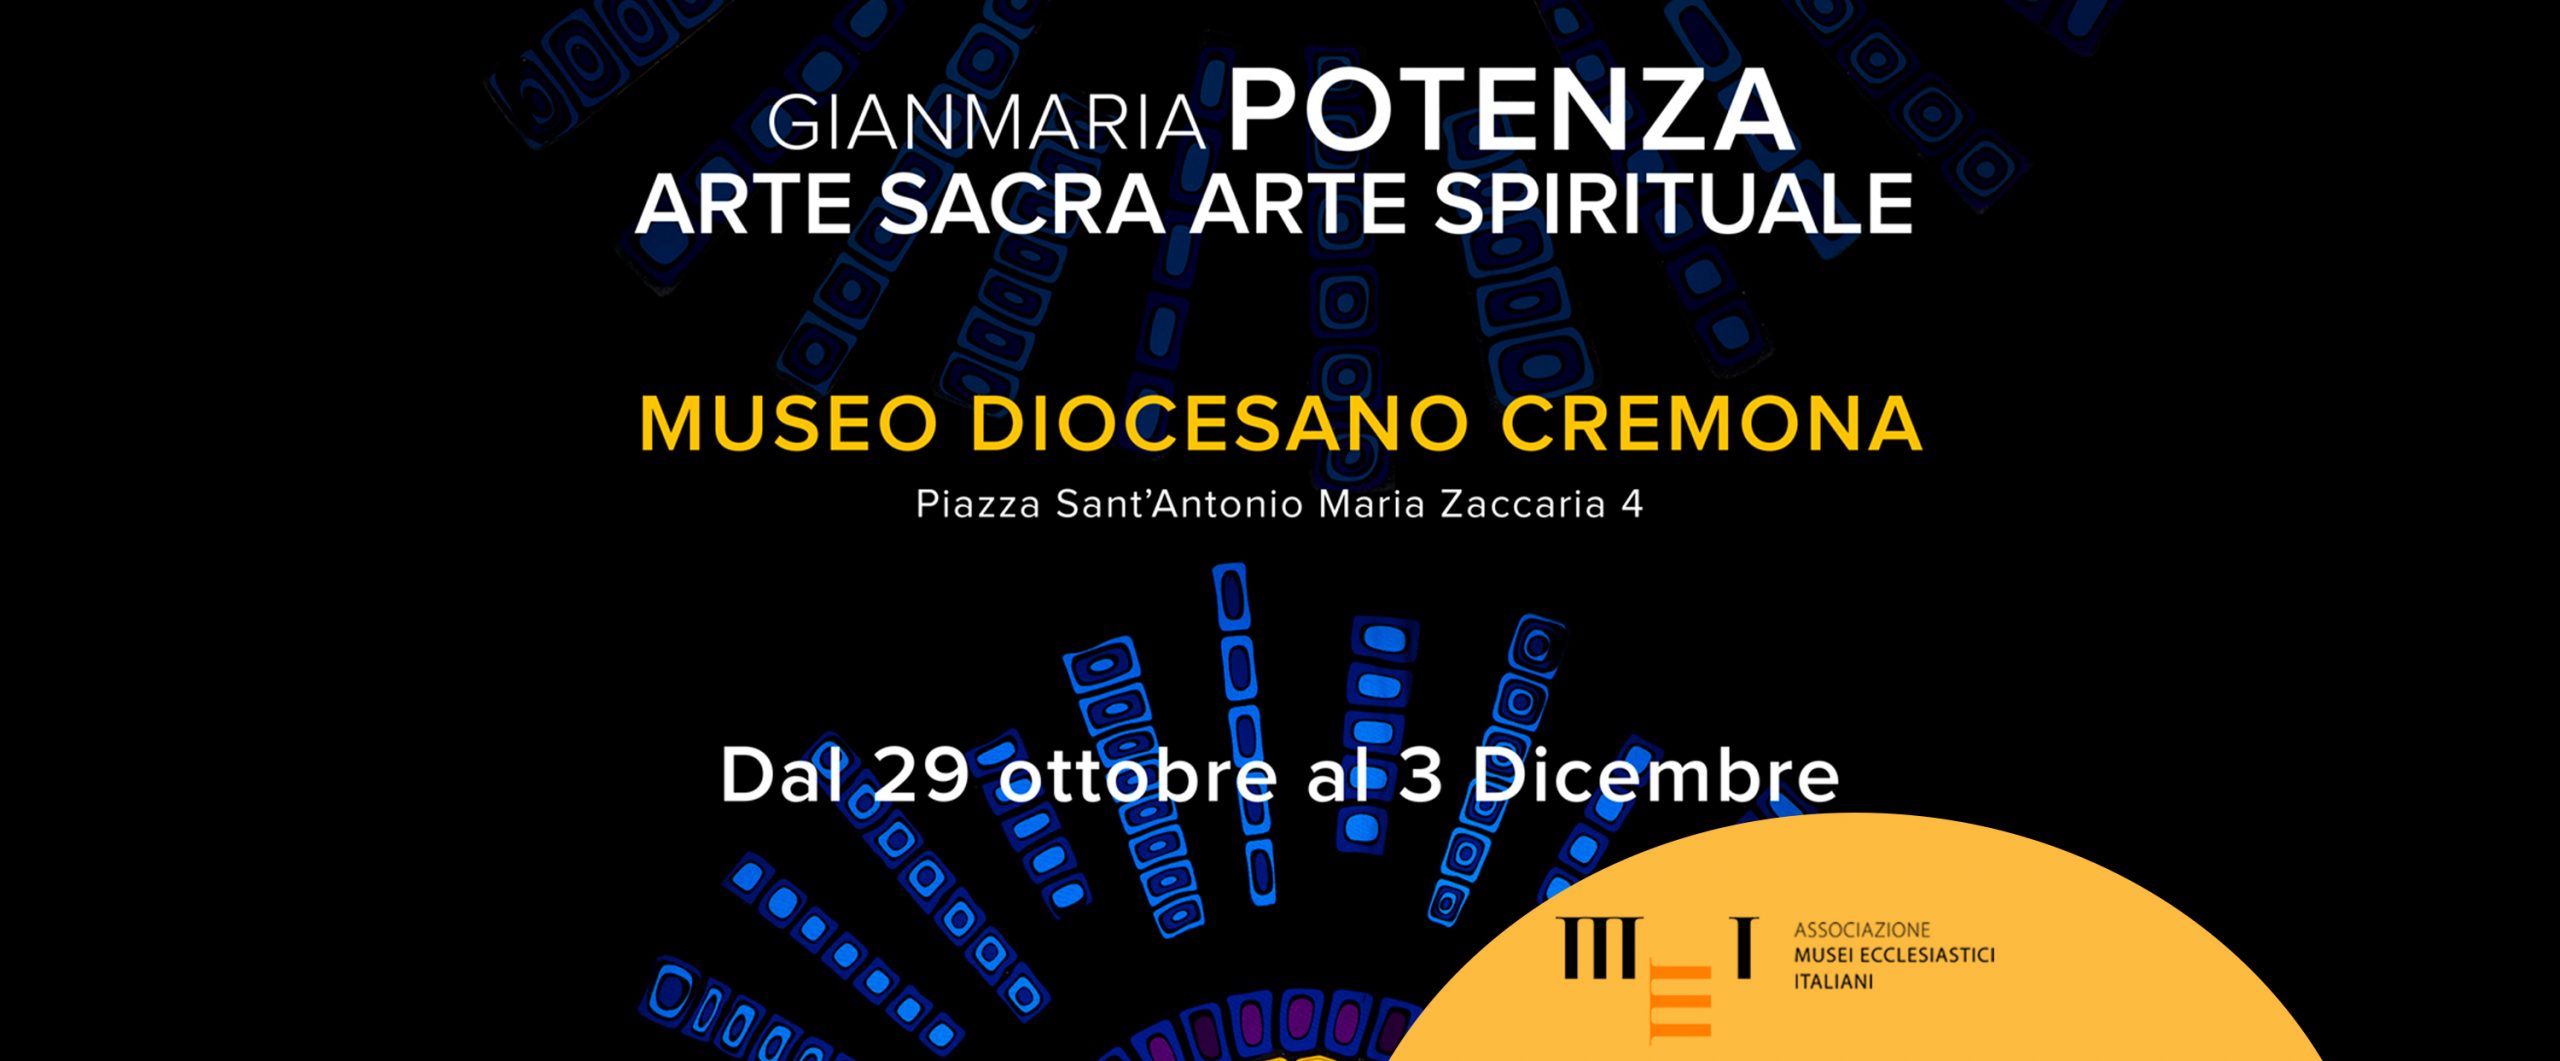 Mostra di Gianmaria Potenza al Museo Diocesano di Cremona fino al 3 dicembre 2022